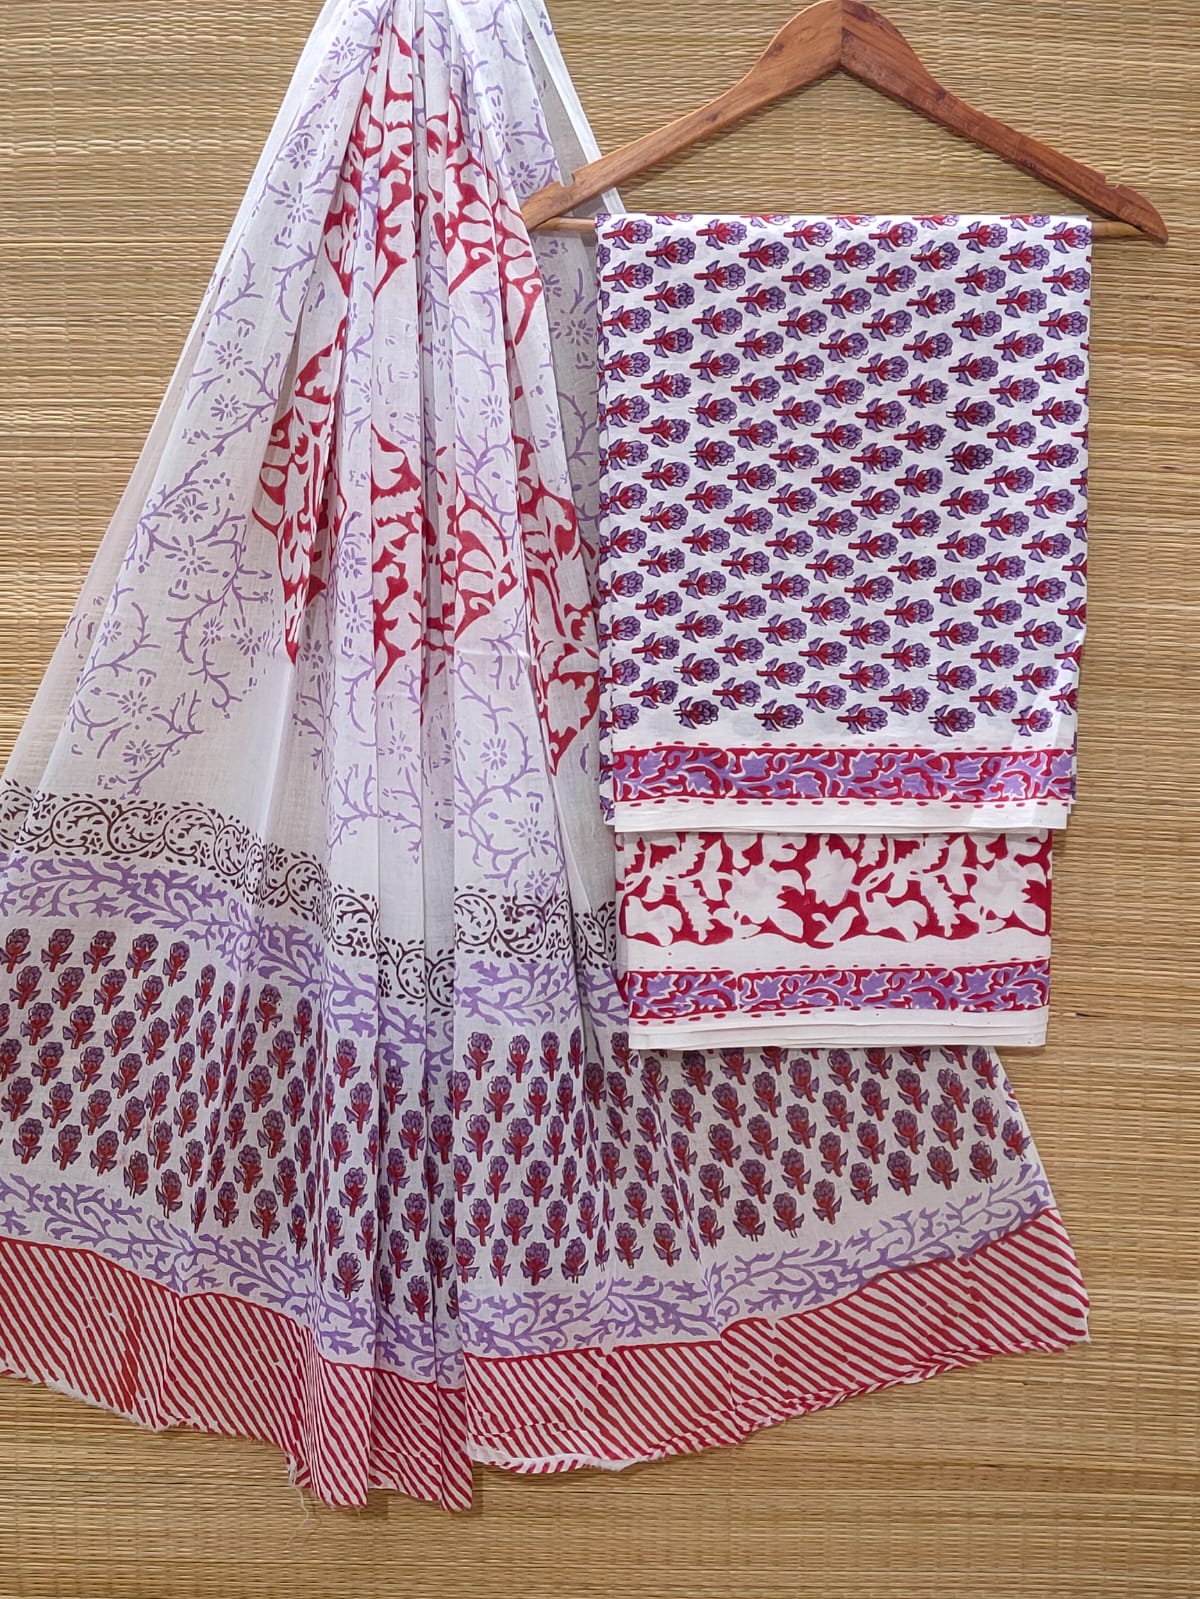 Hand Block Cotton Unstitched Salwar Suit With Cotton/Mulmul Dupatta - JBOCM188